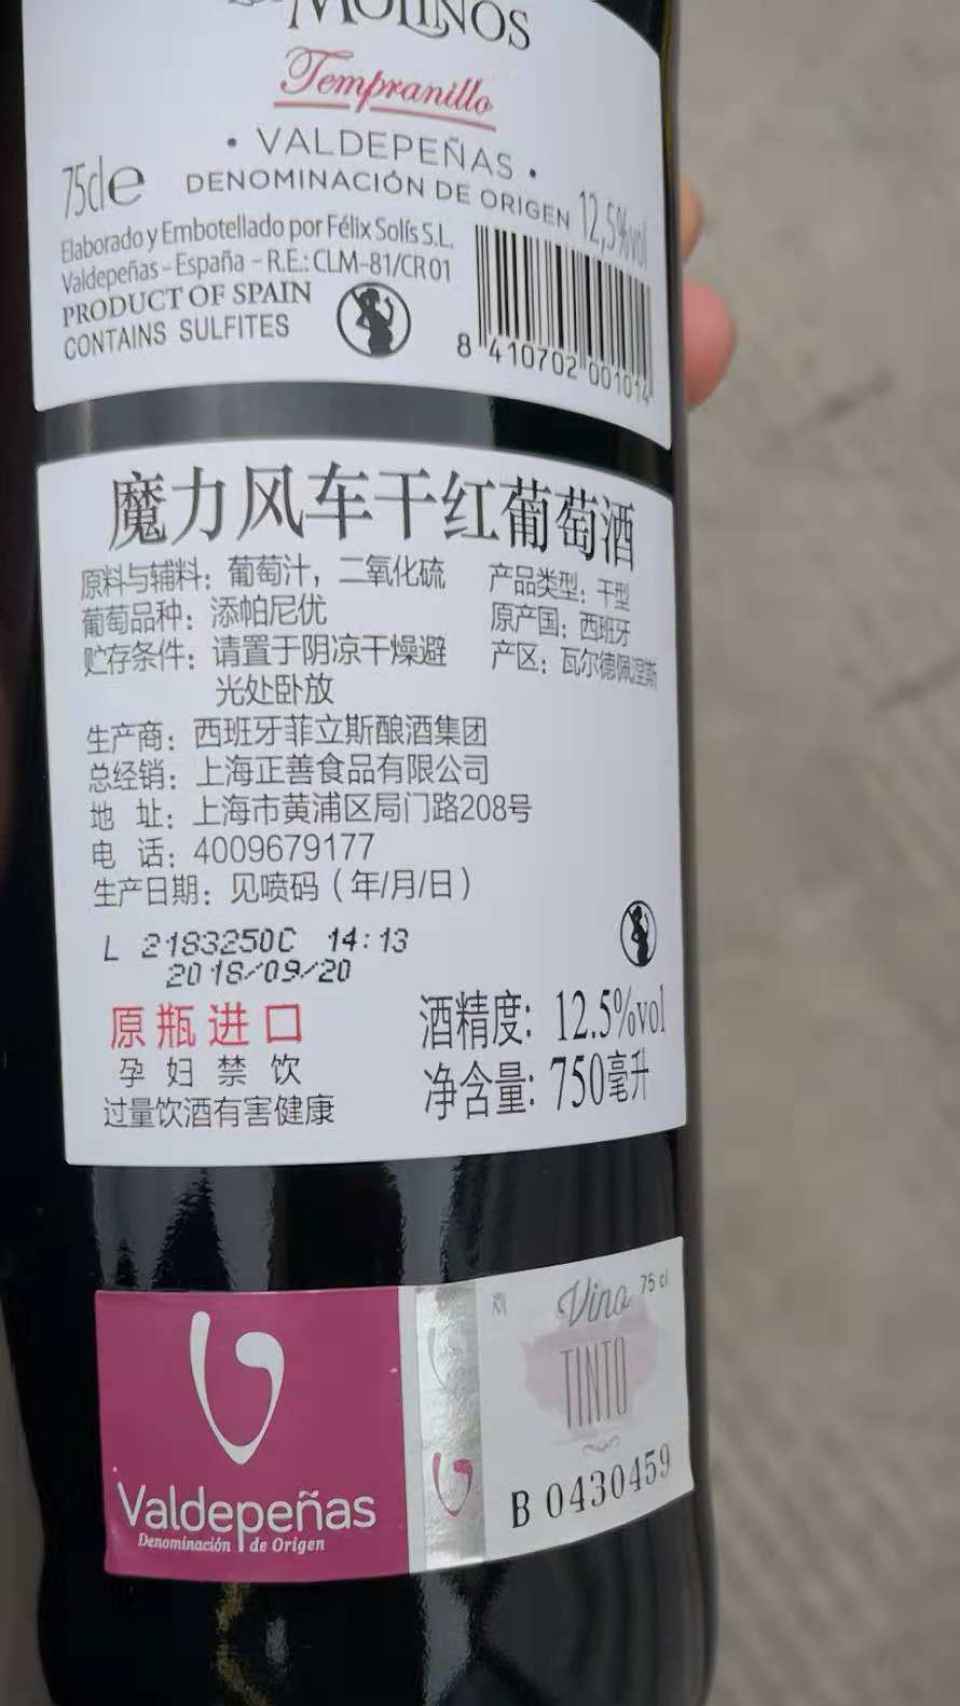 El vino Los Molinos, D.O. Valdepeñas, con etiquetado en chino.